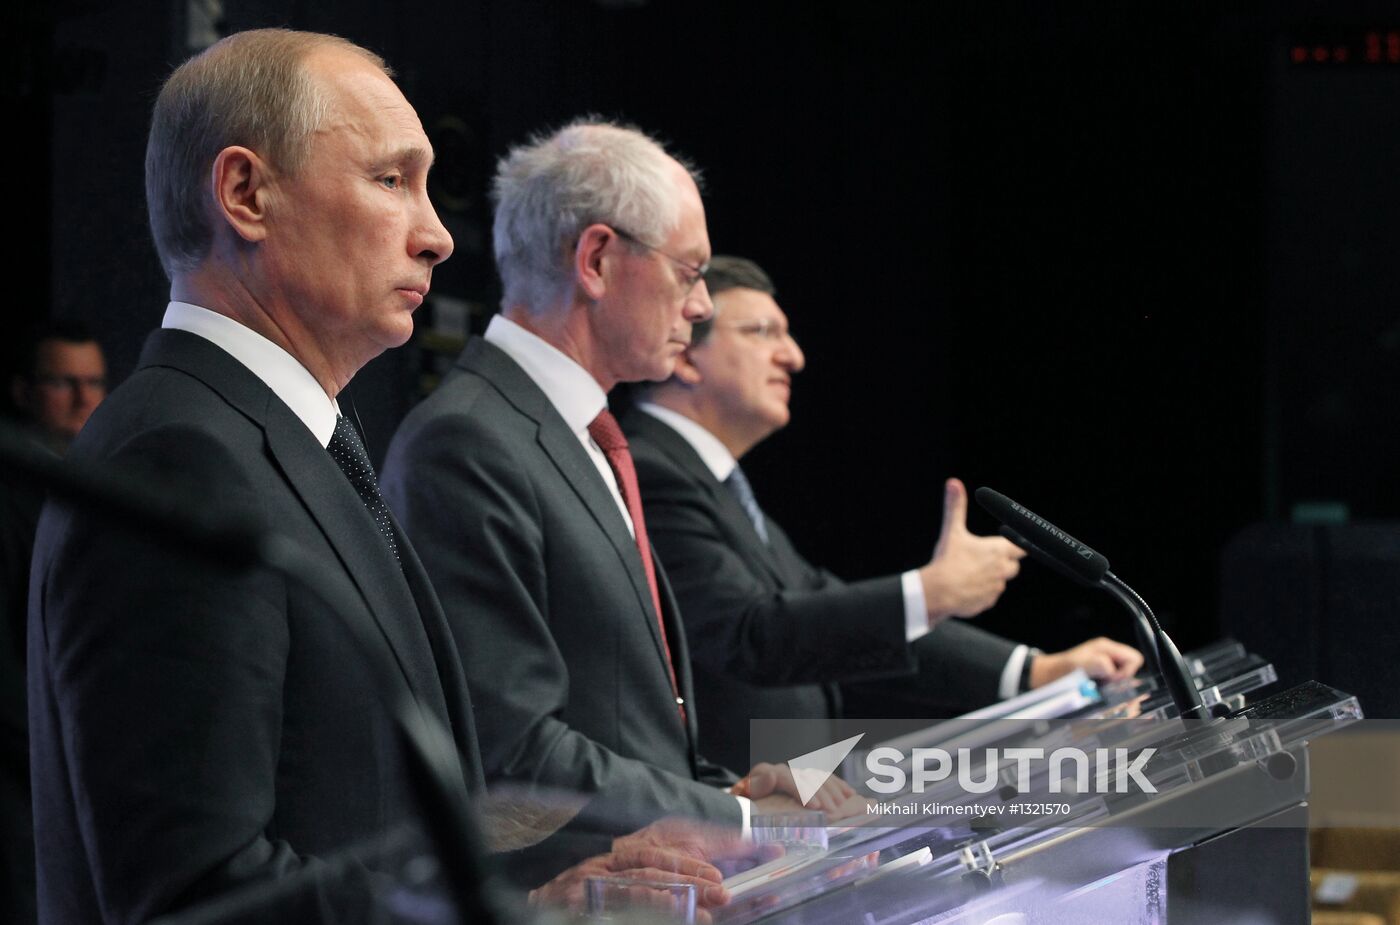 Vladimir Putin at EU-Russia Summit in Brussels